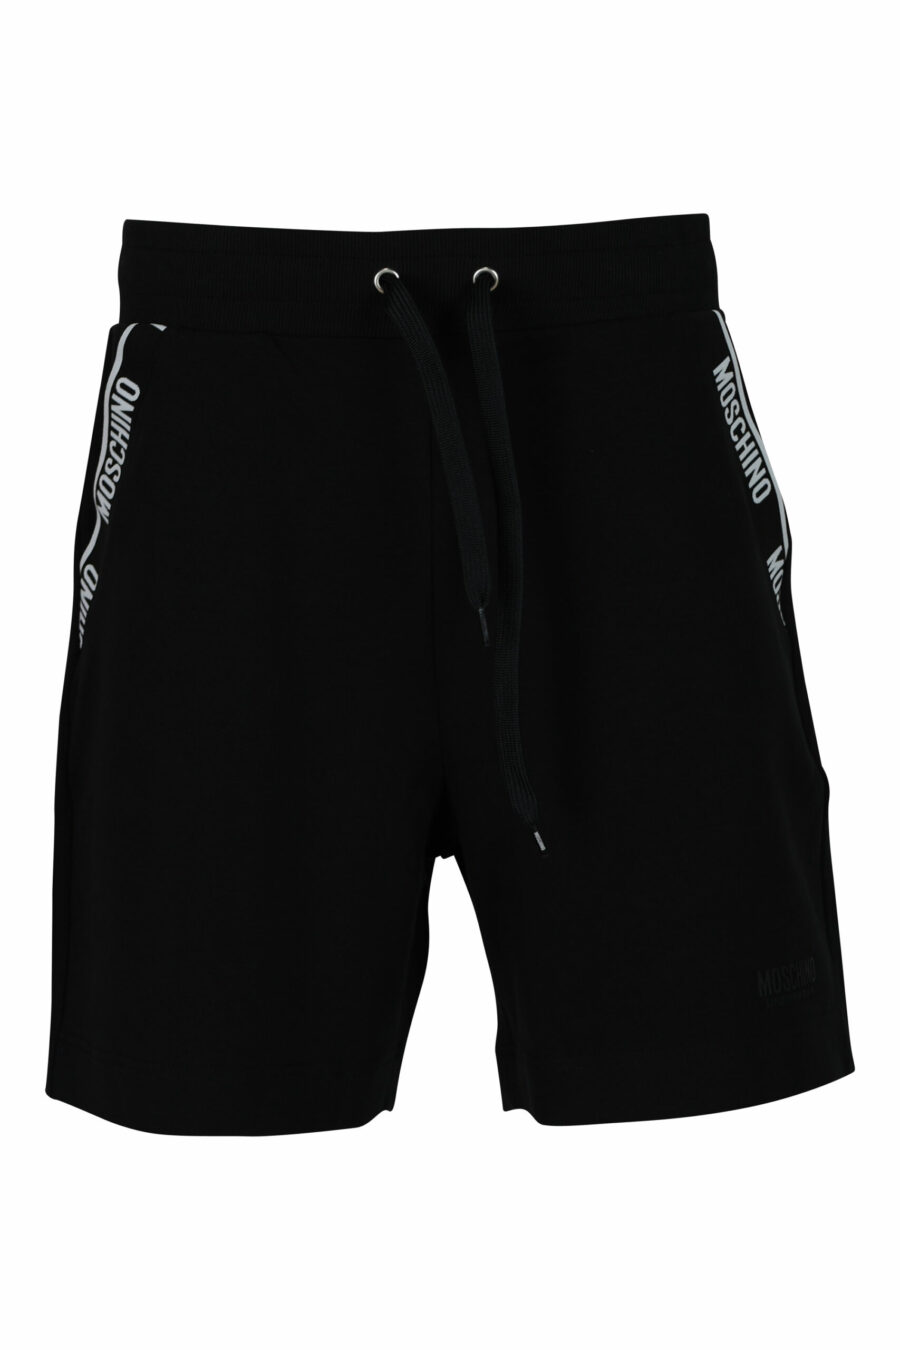 Pantalon de survêtement noir avec poches à logo - 667113623504